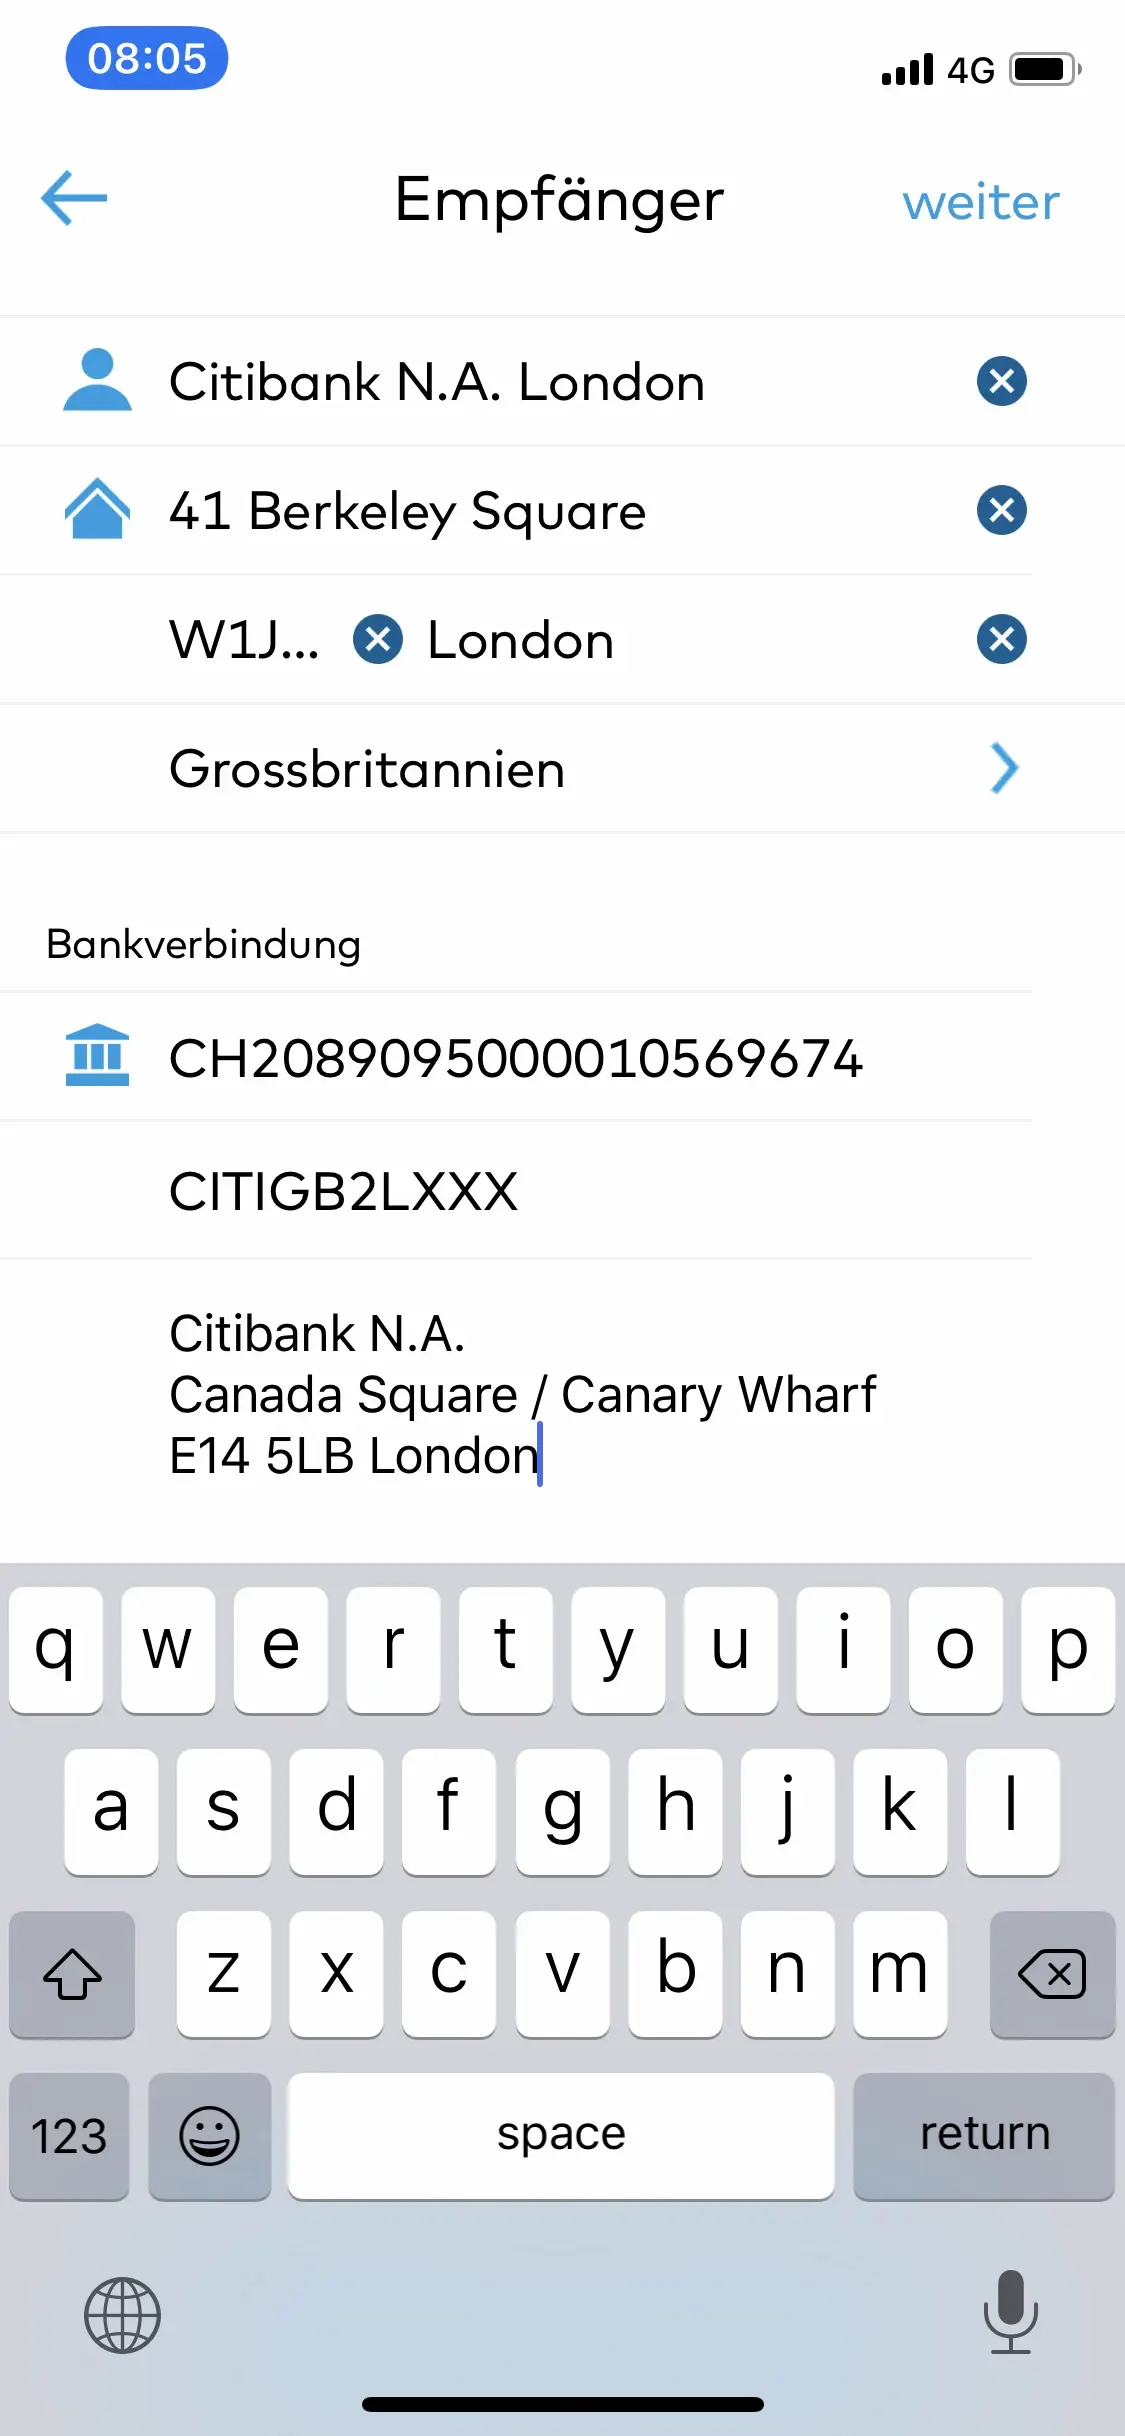 Saisie des informations virement bancaire Interactive Brokers dans l'app mobile Zak (suite)